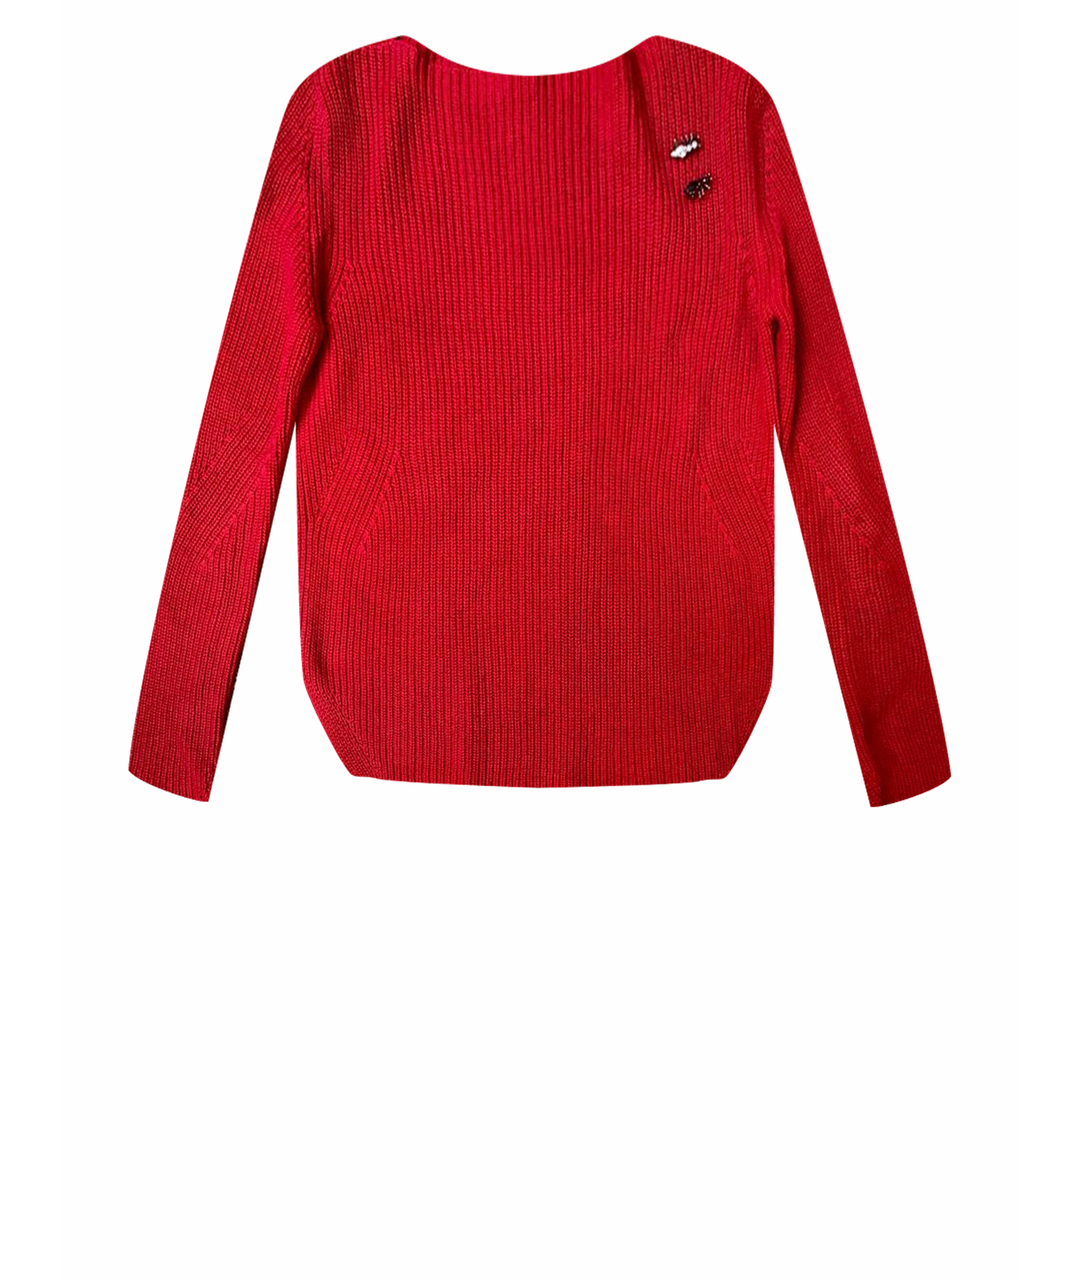 ERMANNO SCERVINO Красный хлопковый джемпер / свитер, фото 1